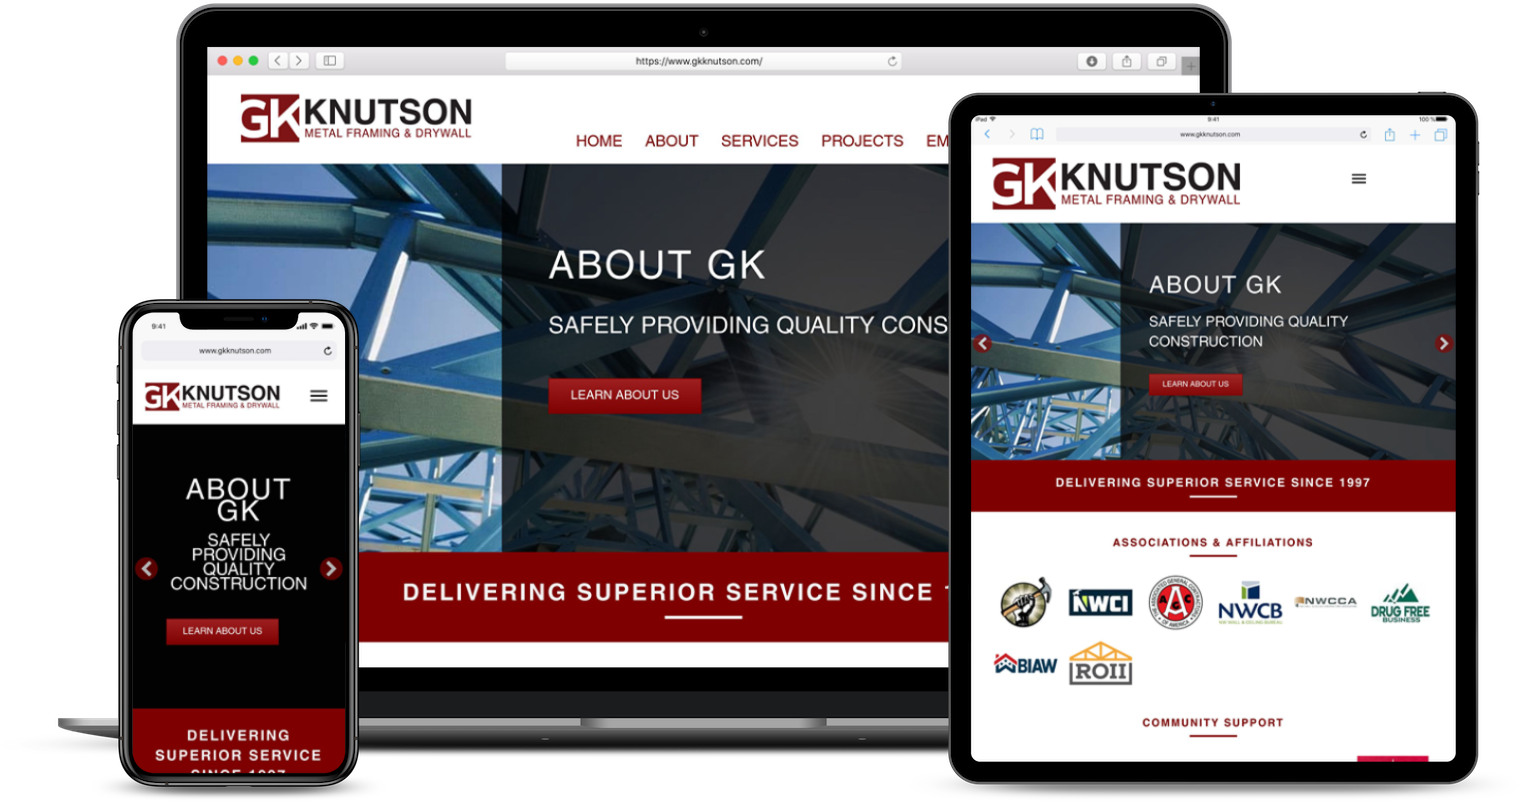 gk knutson website redesign